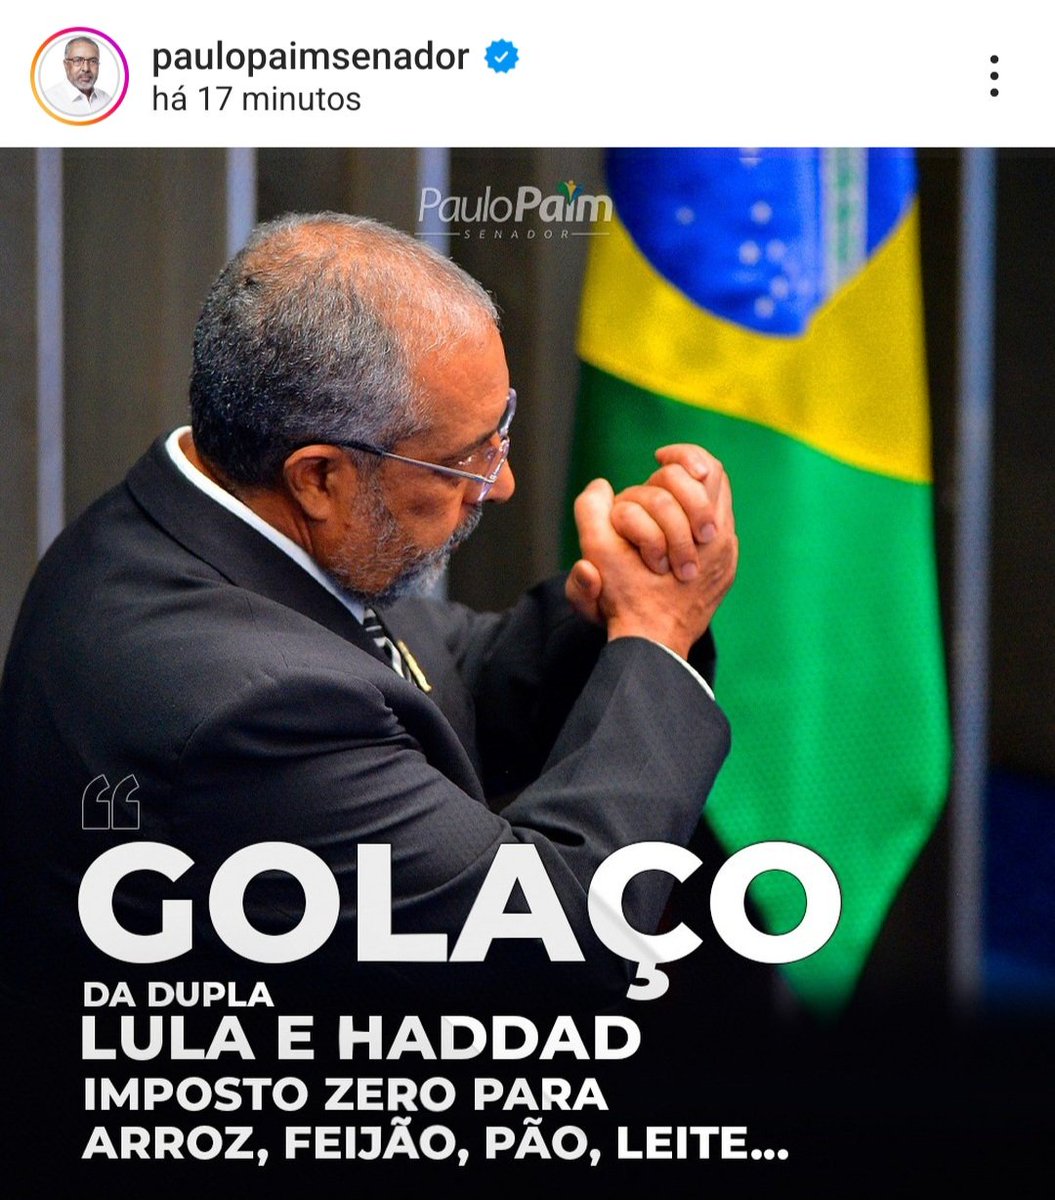 Bom dia a todos Companheir@s. #LulaBrasilComL